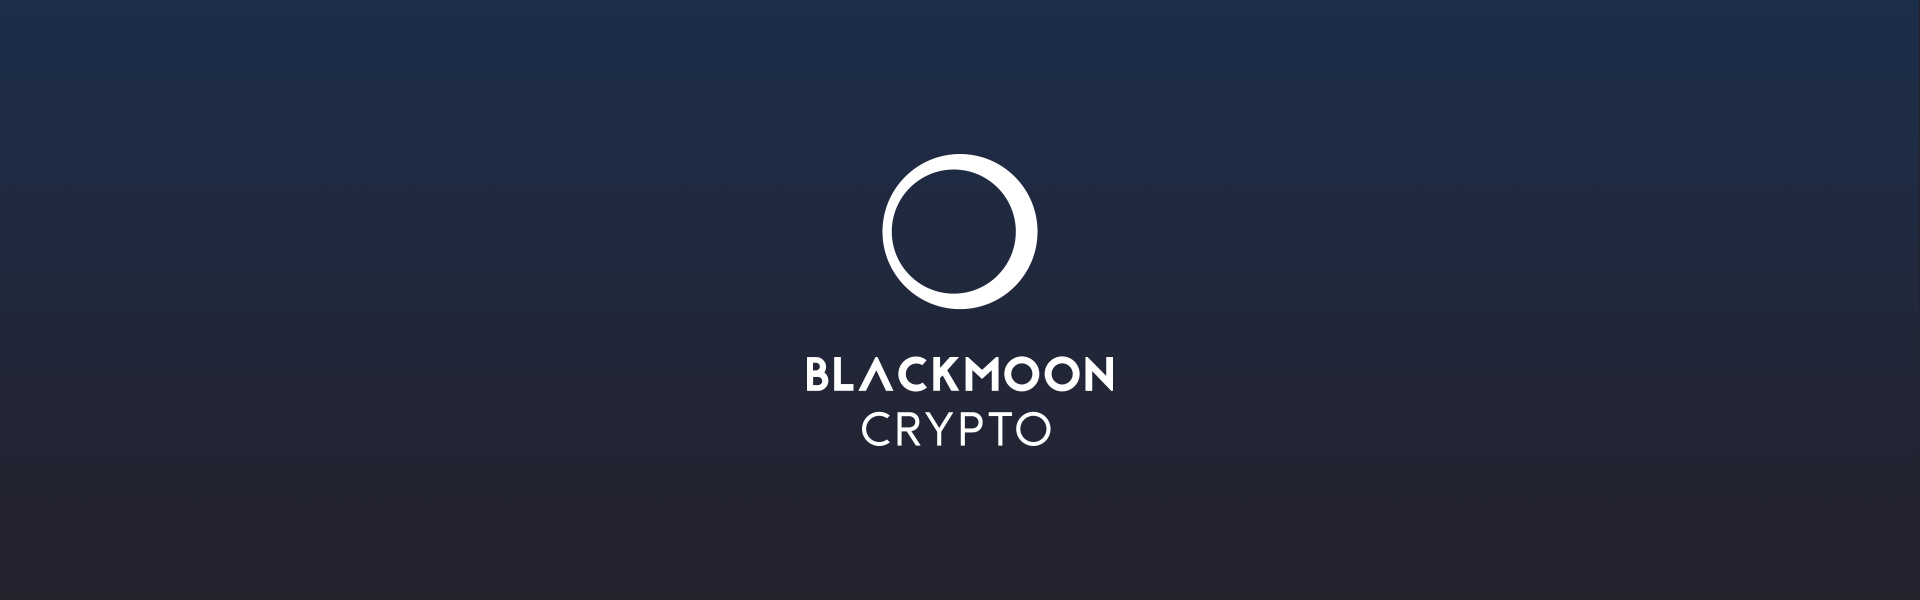 black moon crypto exchange